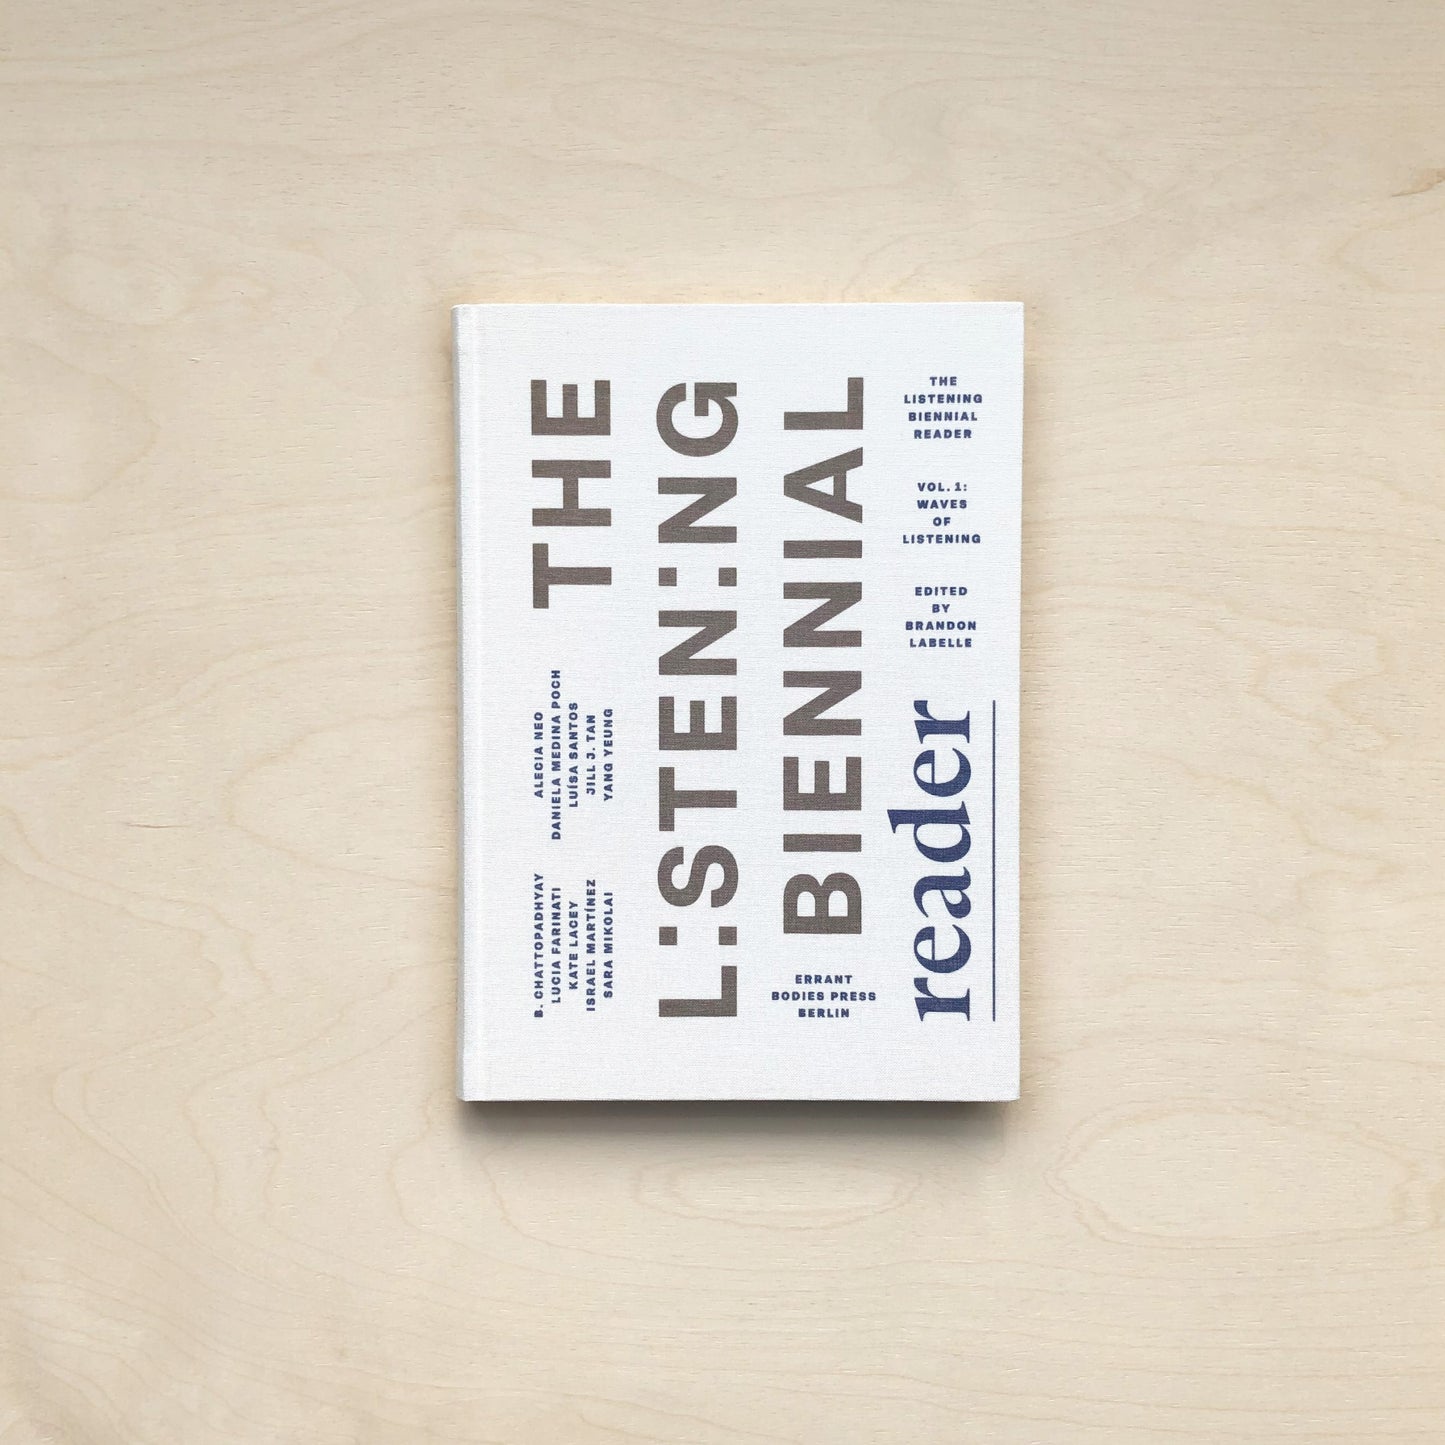 The Listening Biennial Reader - Vol 1: Waves of Listening